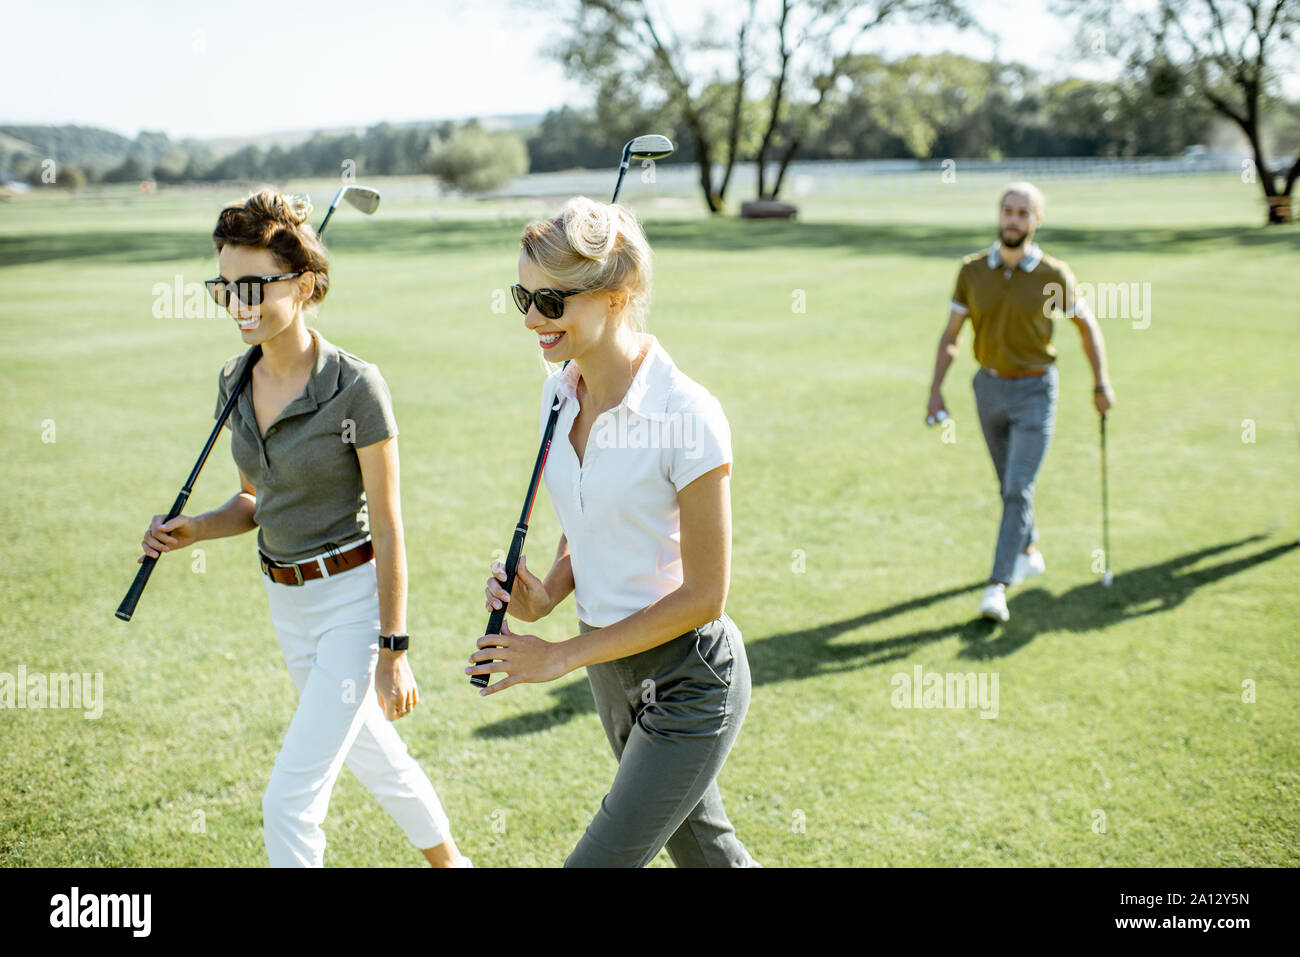 Les deux meilleurs amis de marcher tout en jouant un jeu de golf putters pendant sur un cours sur une journée ensoleillée Banque D'Images